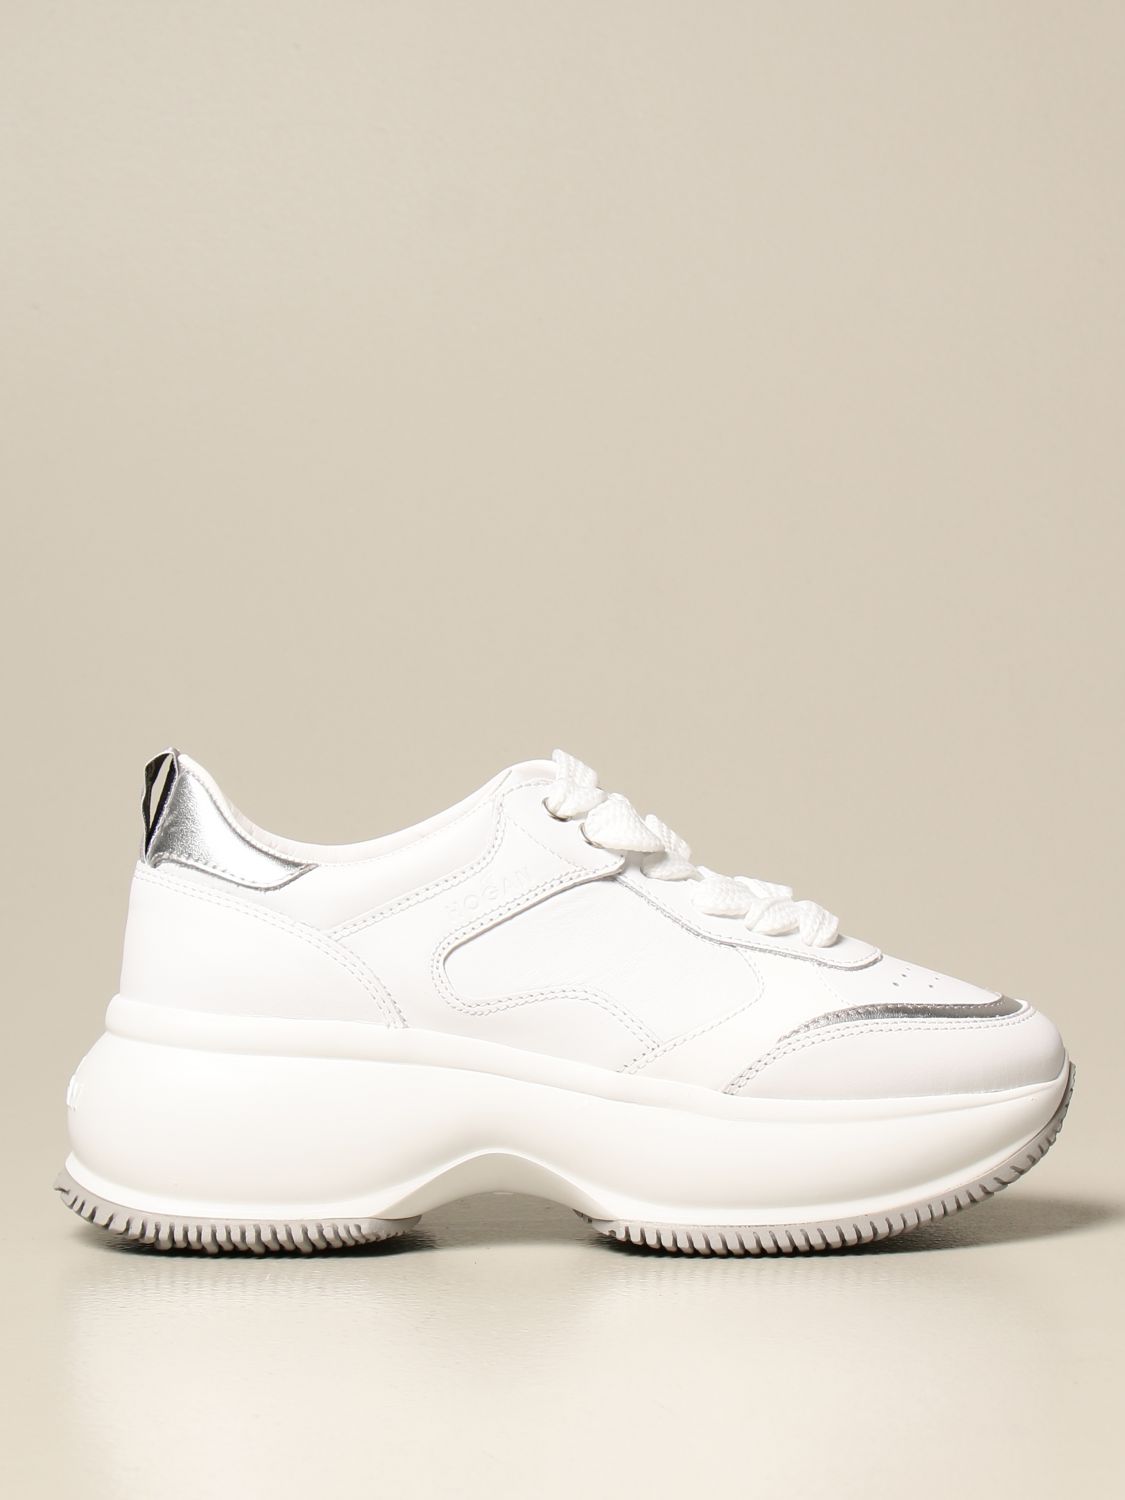 statisch De daadwerkelijke lila HOGAN: Maxi I Active sneakers in leather - White | Hogan sneakers  HXW4350BN50 IEC online on GIGLIO.COM